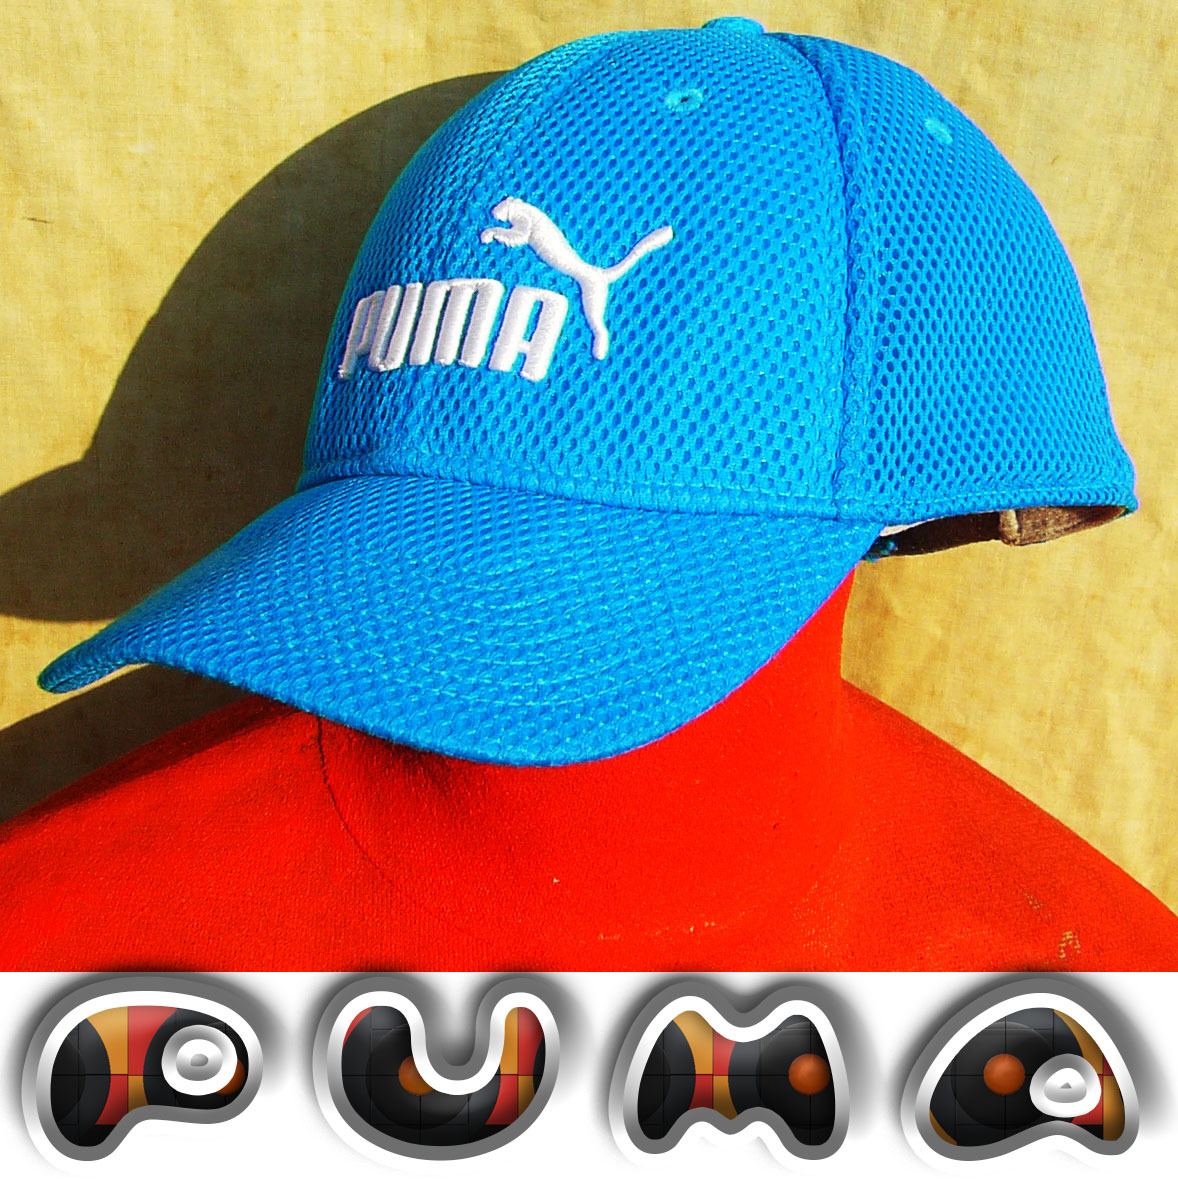  быстрое решение #PUMA# Sky голубой - .. нет ... зонт только. cap## б/у одежда 